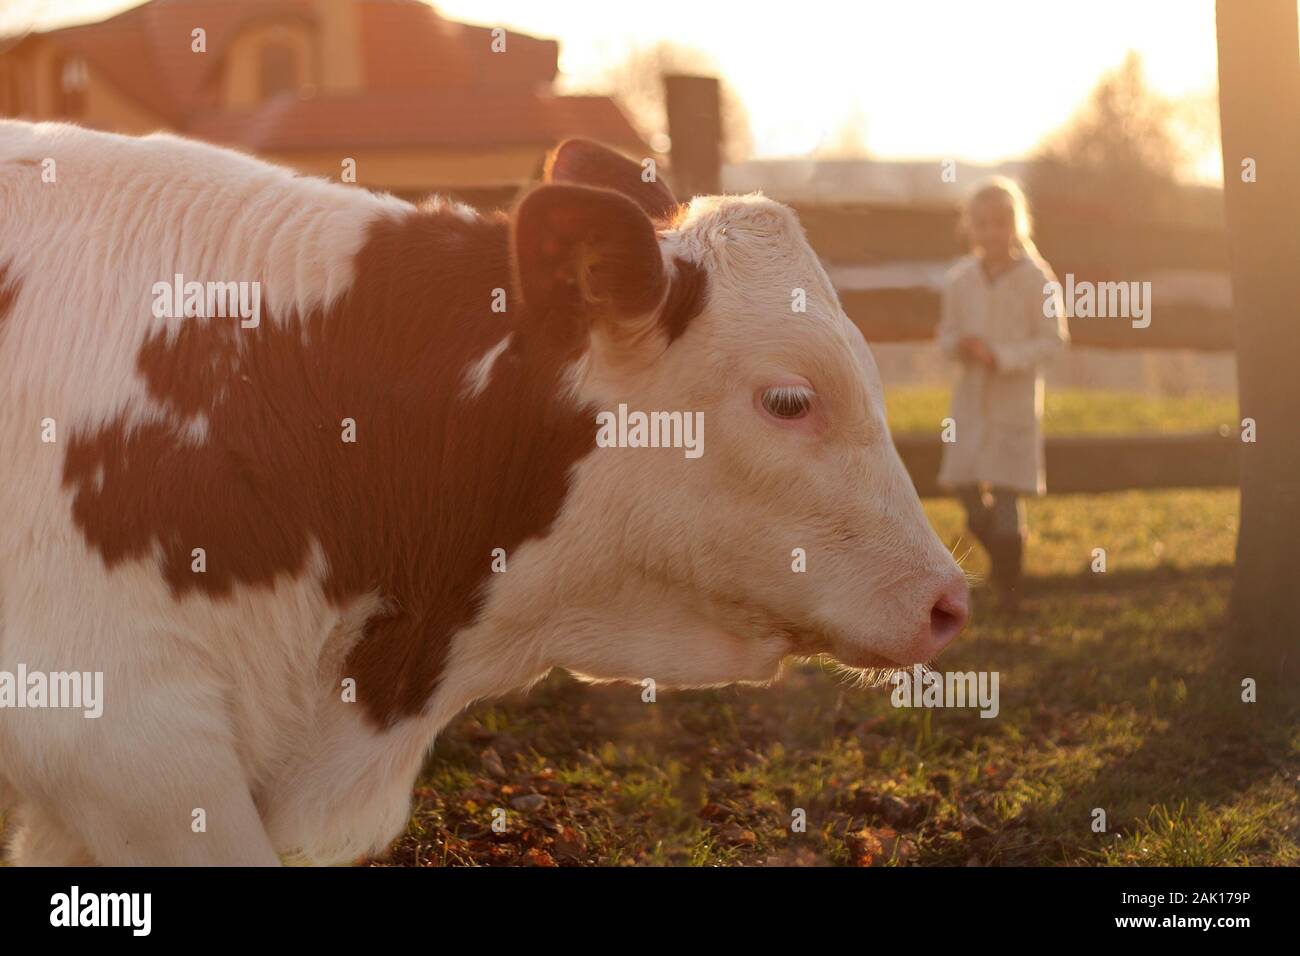 vue rapprochée de la tête du veau sur la ferme, fille près de la clôture en bois en arrière-plan, coucher de soleil Banque D'Images